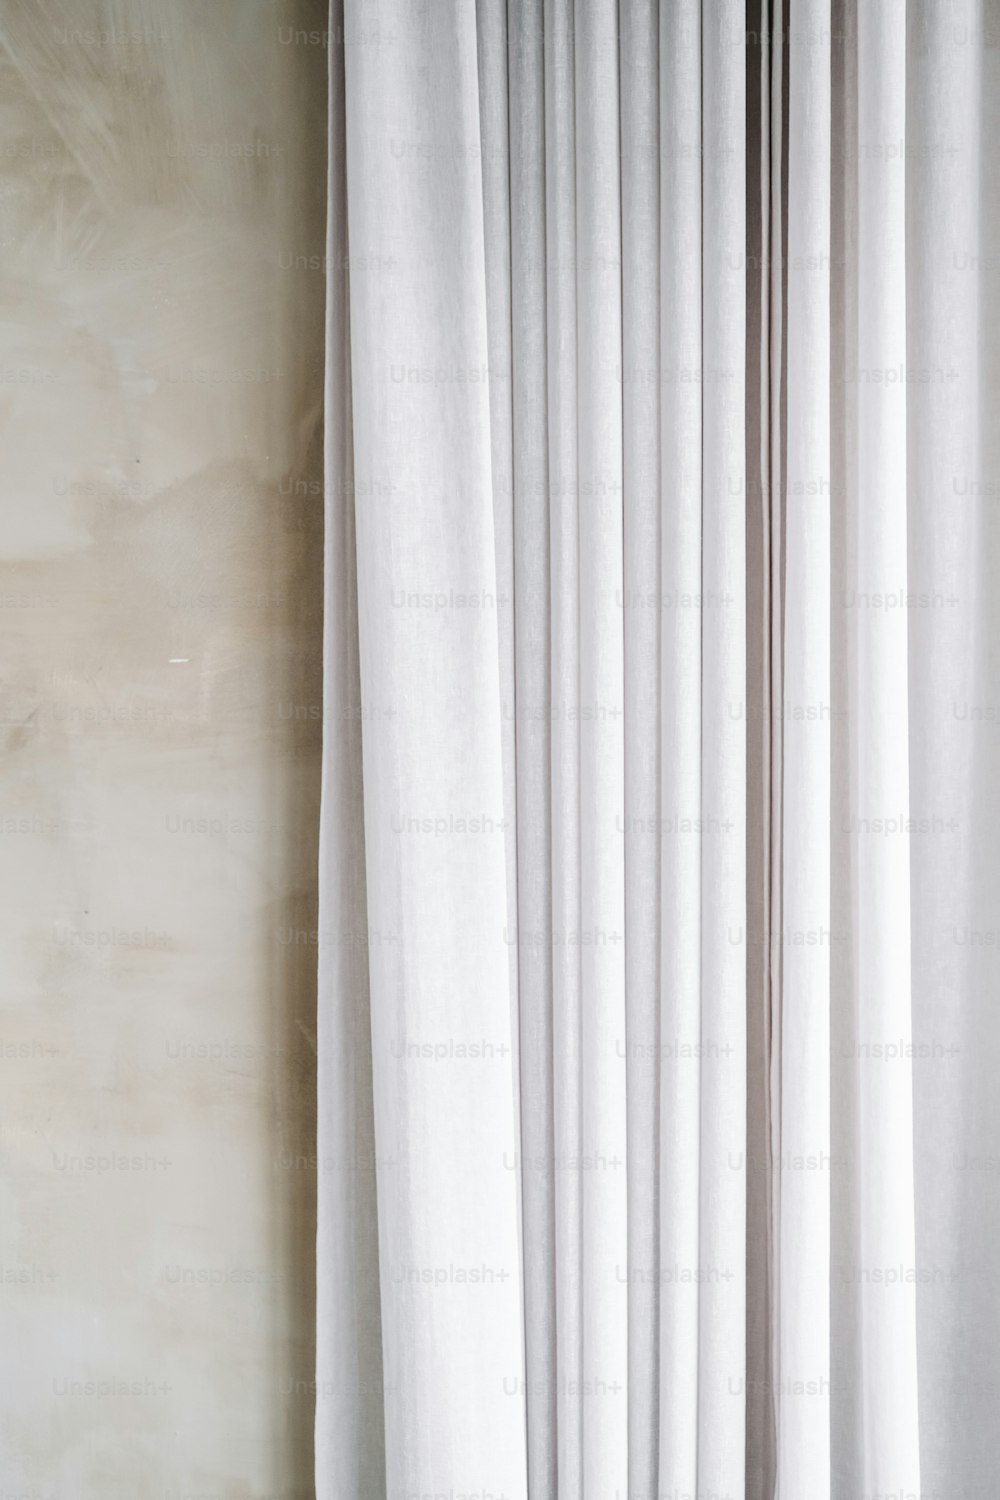 uma cortina branca pendurada no lado de uma parede